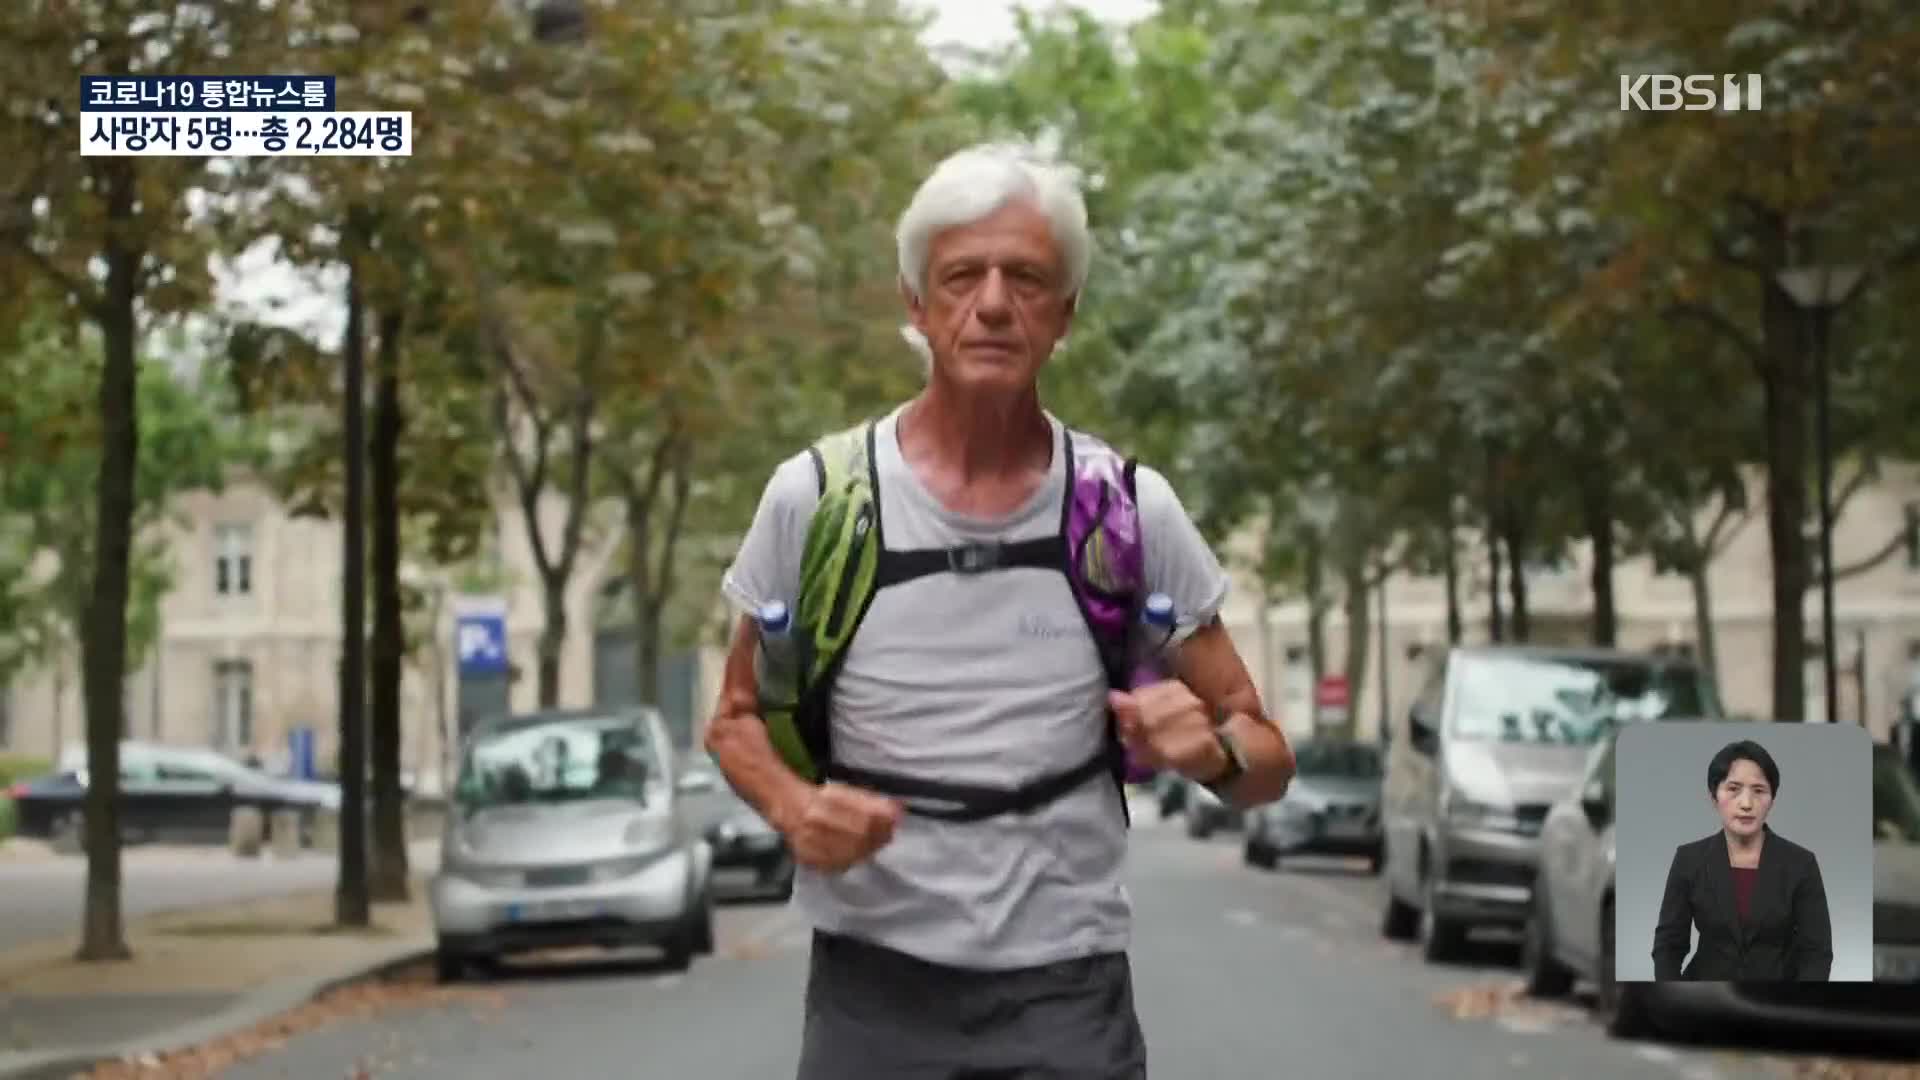 극한의 ‘몽블랑 울트라 마라톤’ 참가하는 70대 남성